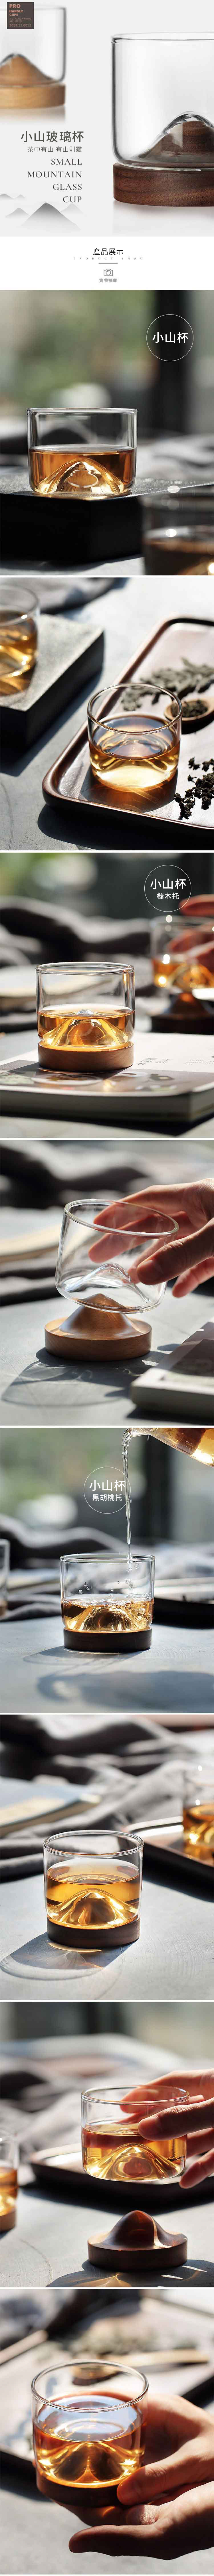 創意小物館 質感茶中有小山木托玻璃茶酒杯 軟木